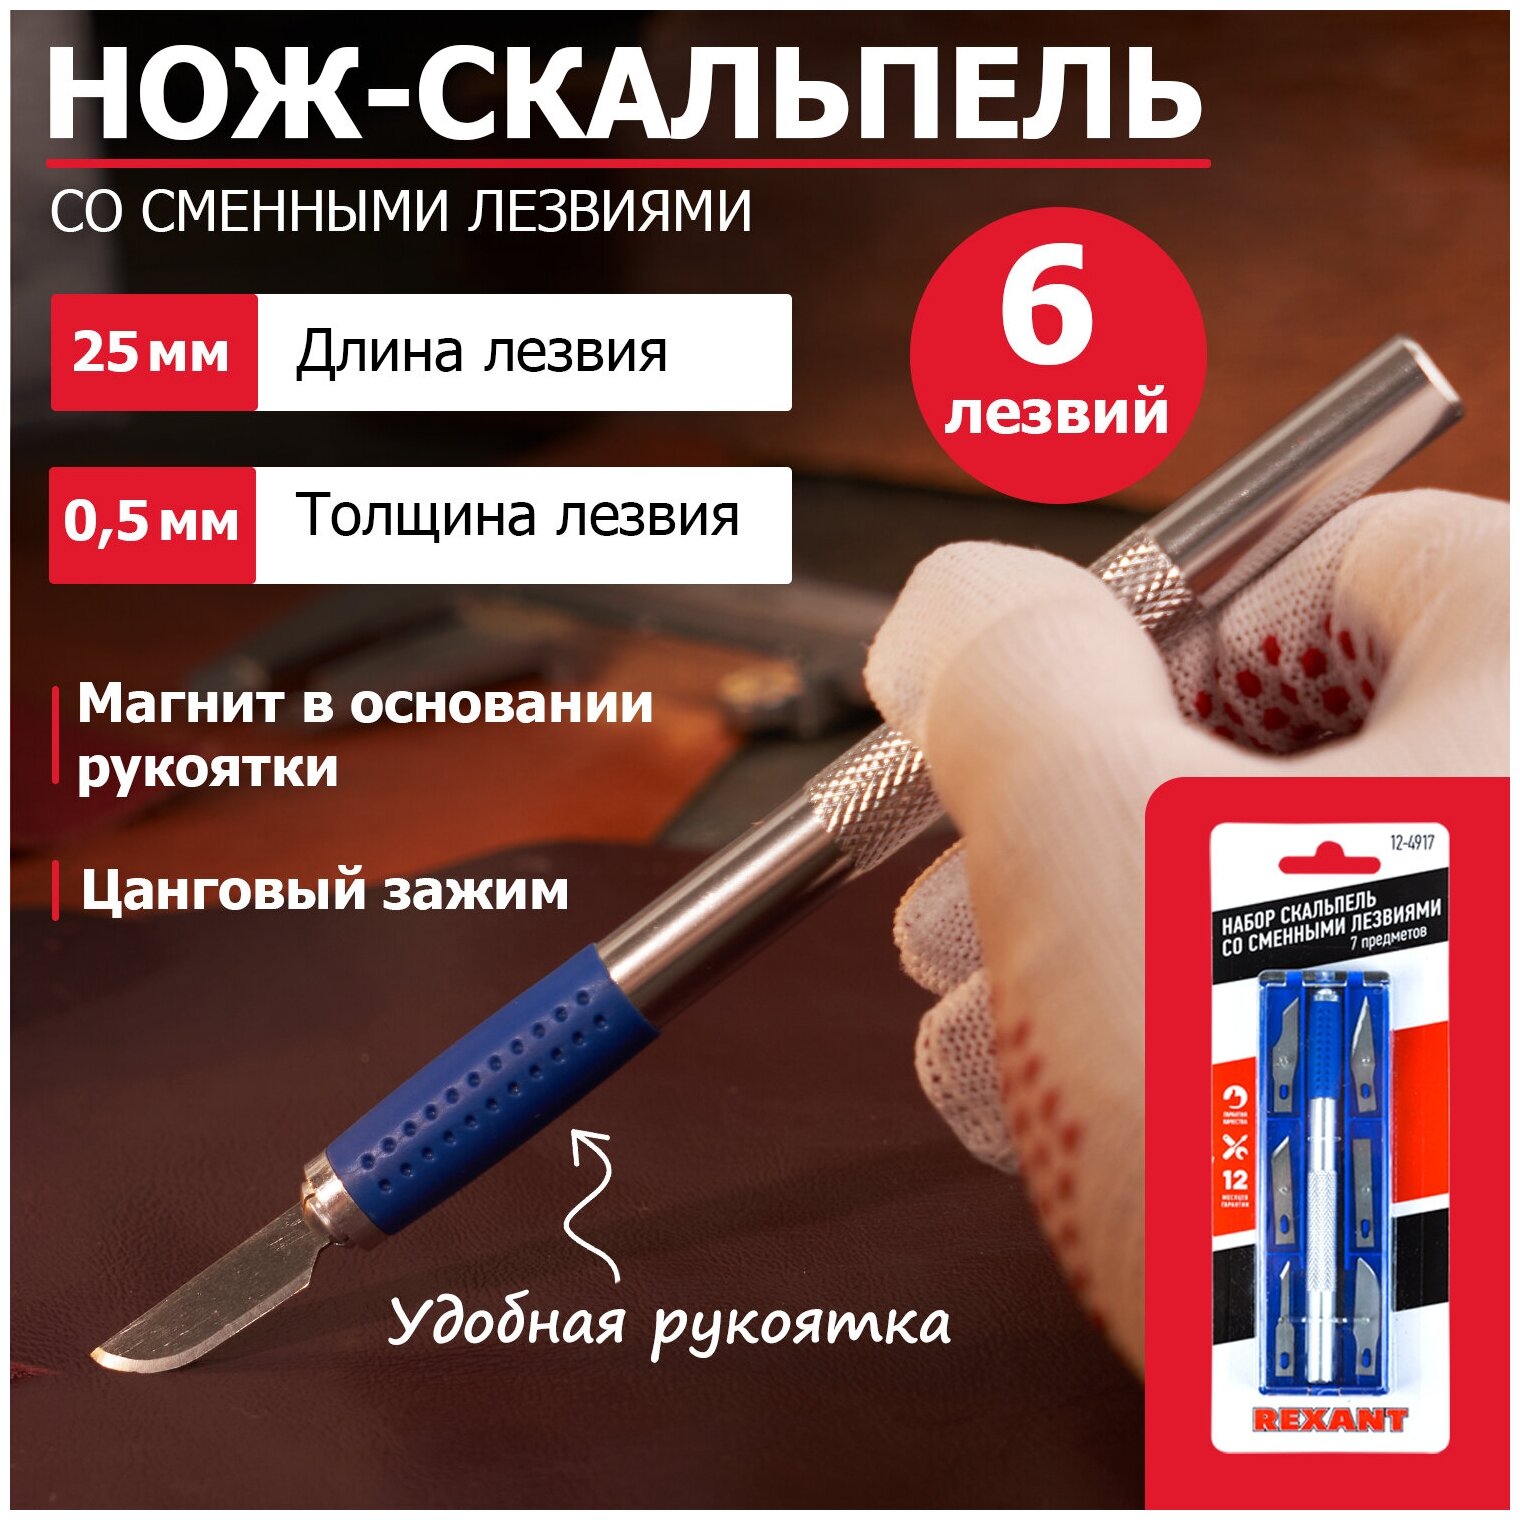 Нож скальпель со сменными лезвиями 7 предметов Rexant